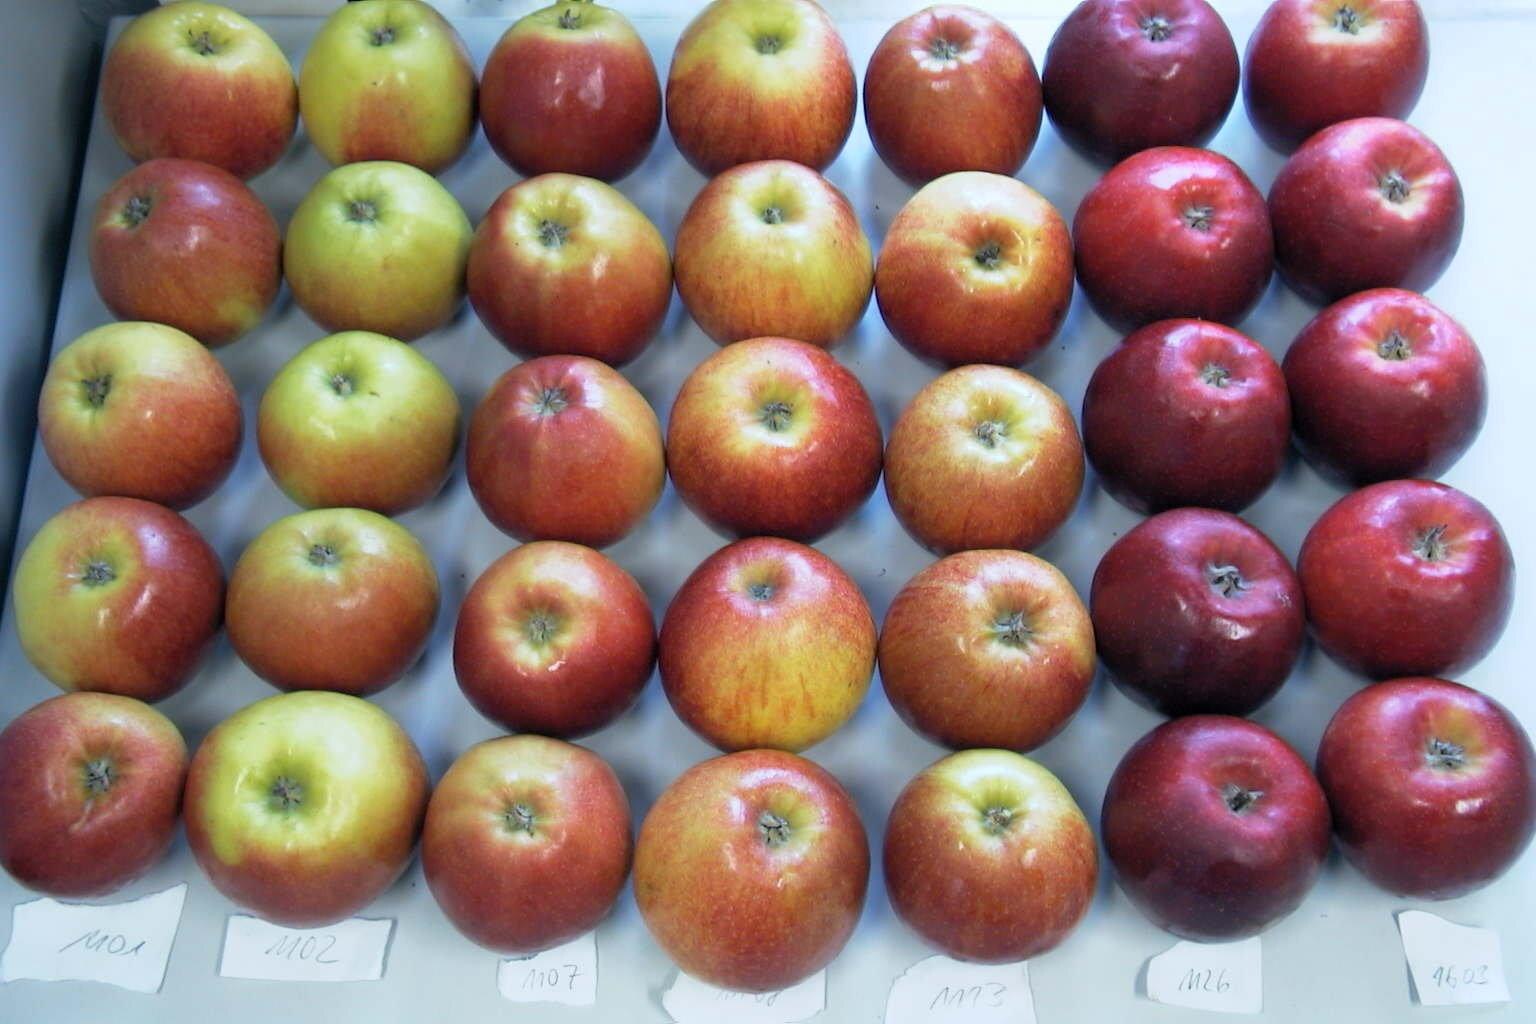 Draufsicht auf viele Äpfel die in mehreren Reihen angeordnet sind. Vor den jeweiligen Reihen sind kleine Schilder mit Nummern abgebildet.